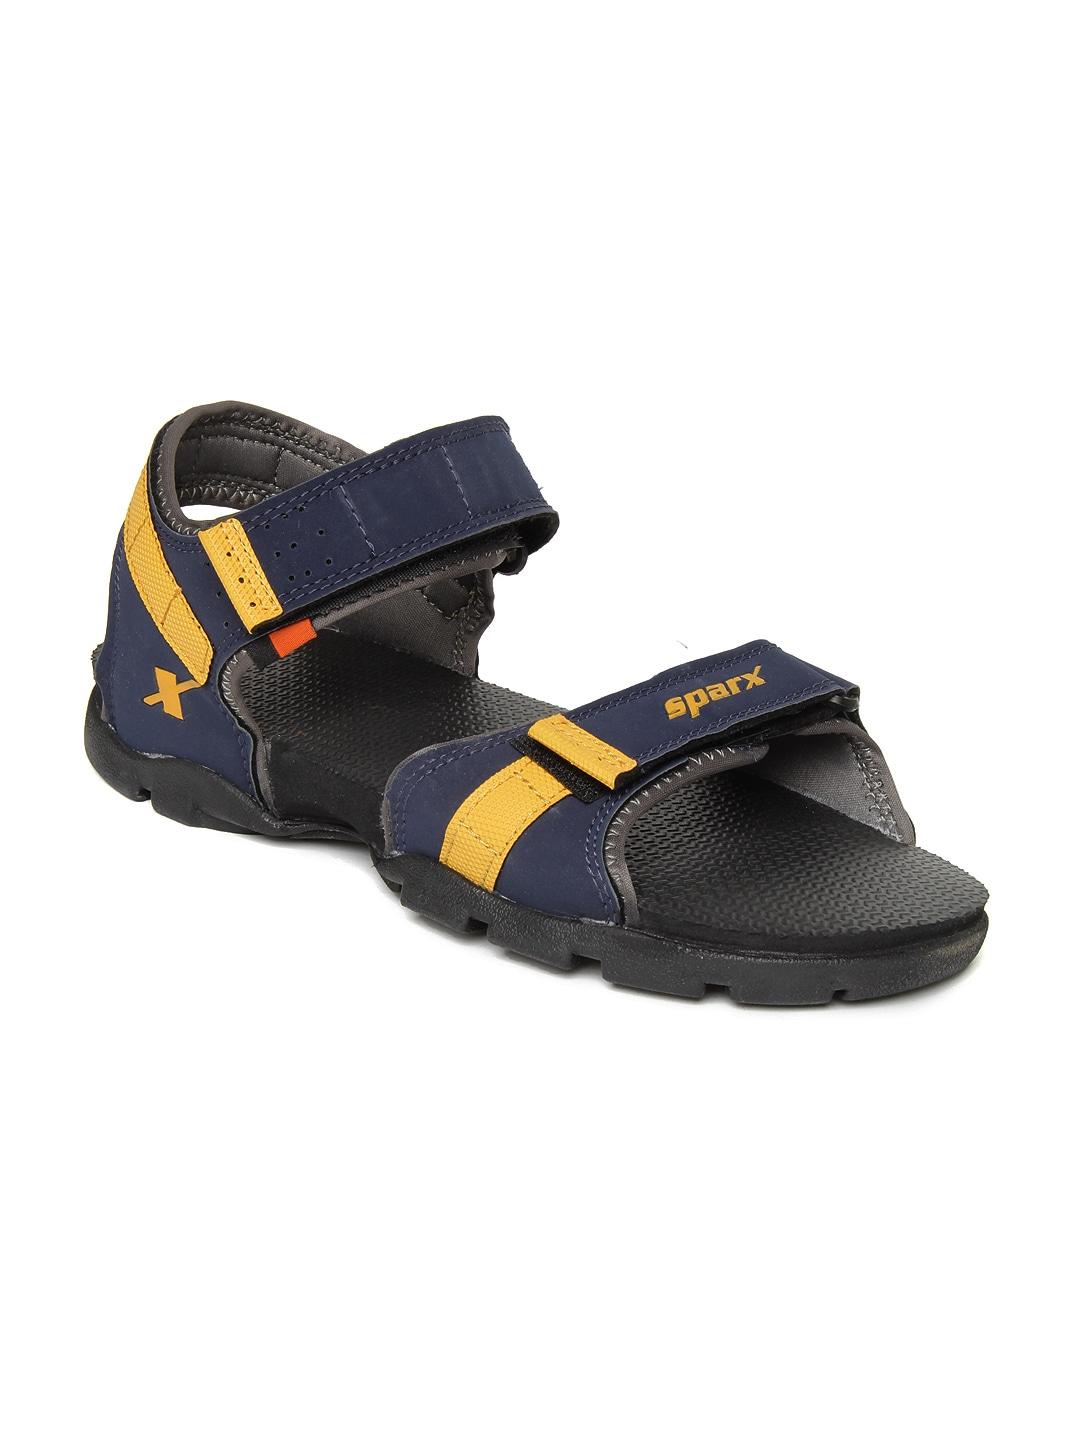 Sparx Men Navy Blue Sports Sandals